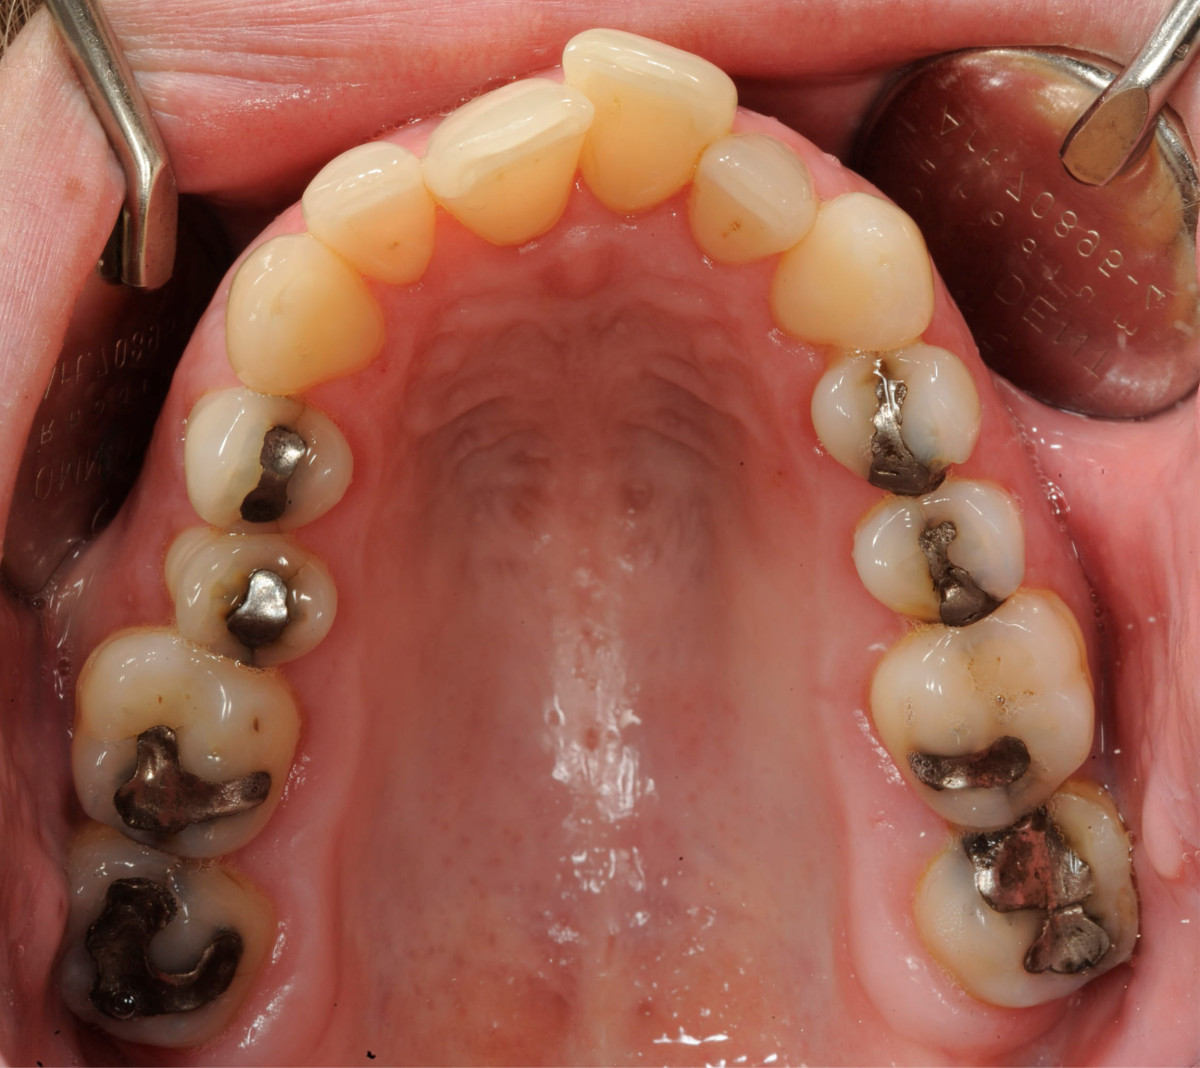 crowded teeth marfan